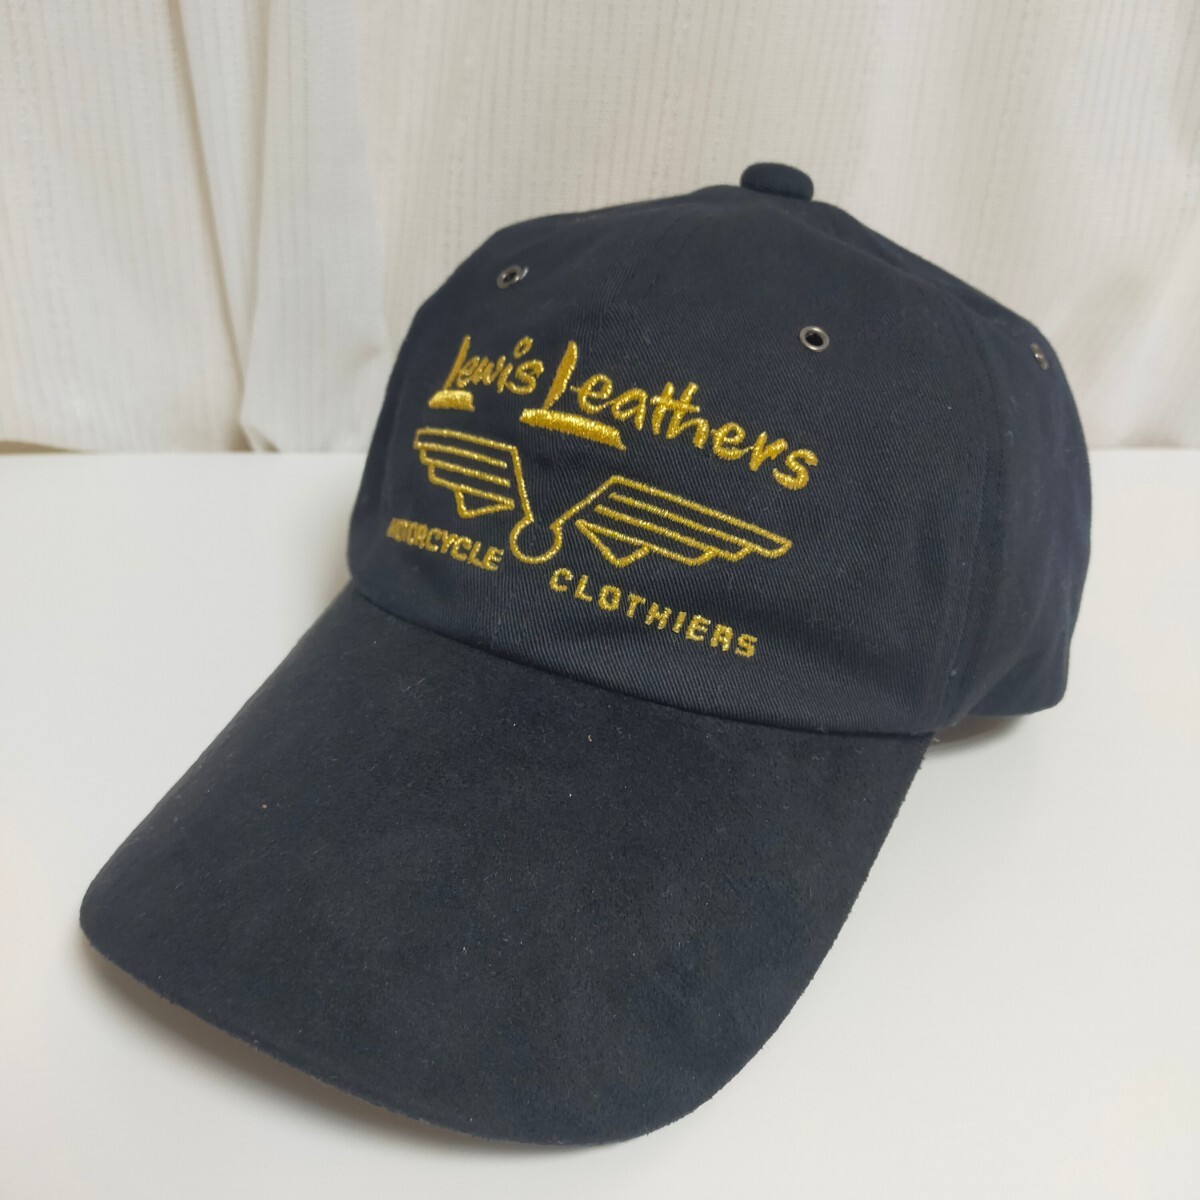 Lewis Leathers ルイスレザー コットン ロゴキャップ 帽子 牛革アジャスター スエード調ツバ フリー ブラック(黒）の画像1